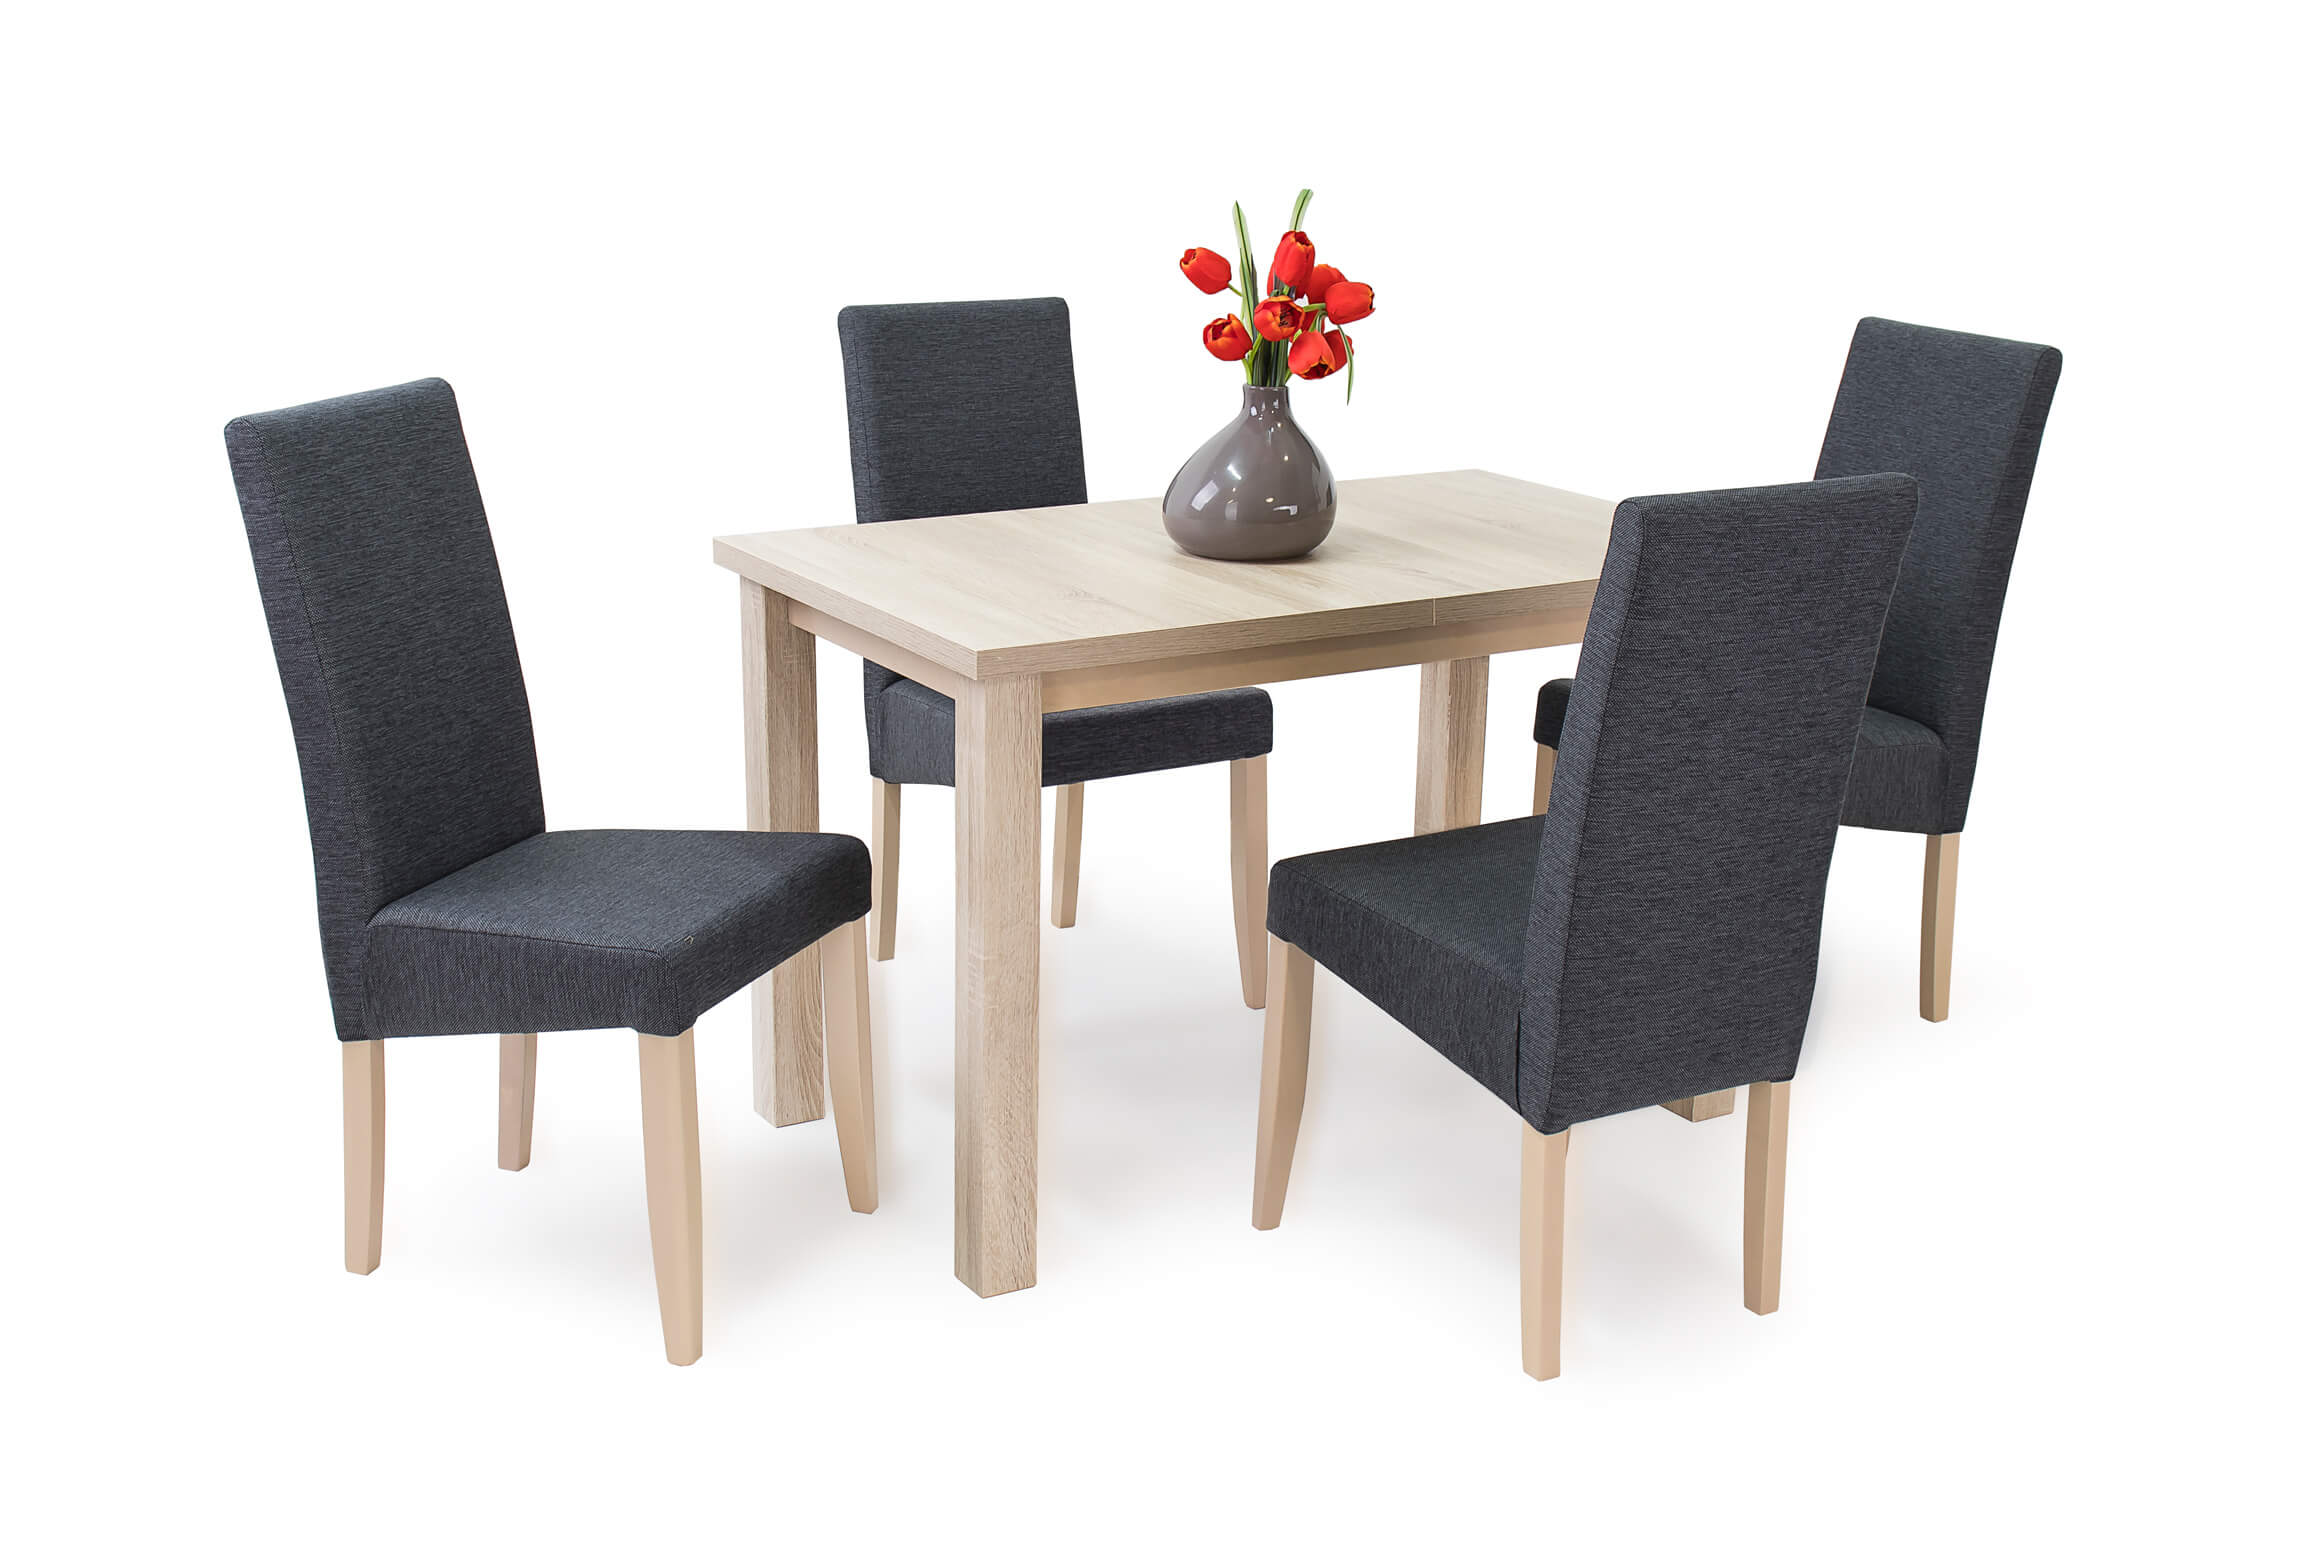 Berta asztal Berta lux székekkel | 4 személyes étkezőgarnitúra